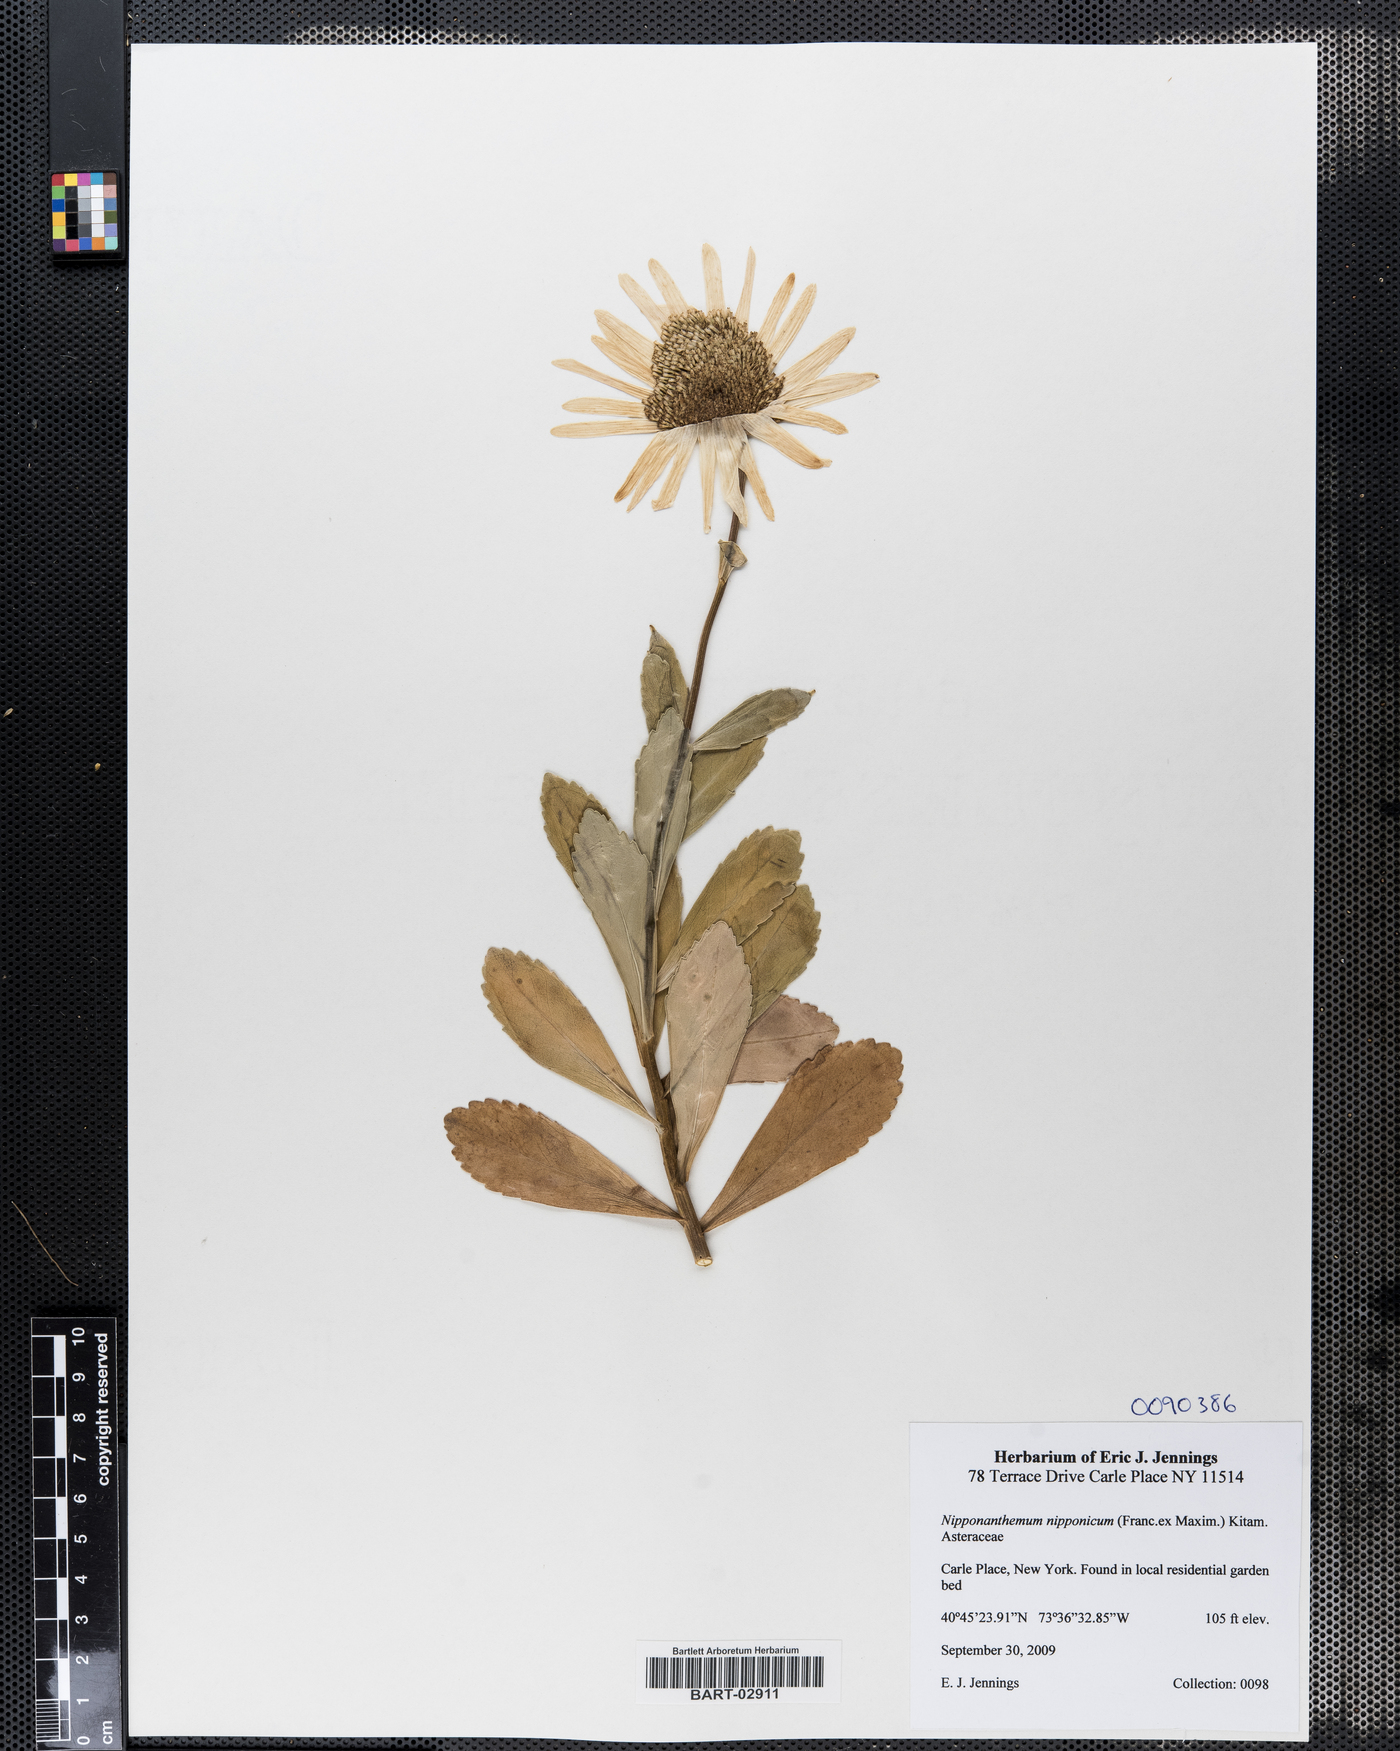 Nipponanthemum nipponicum image